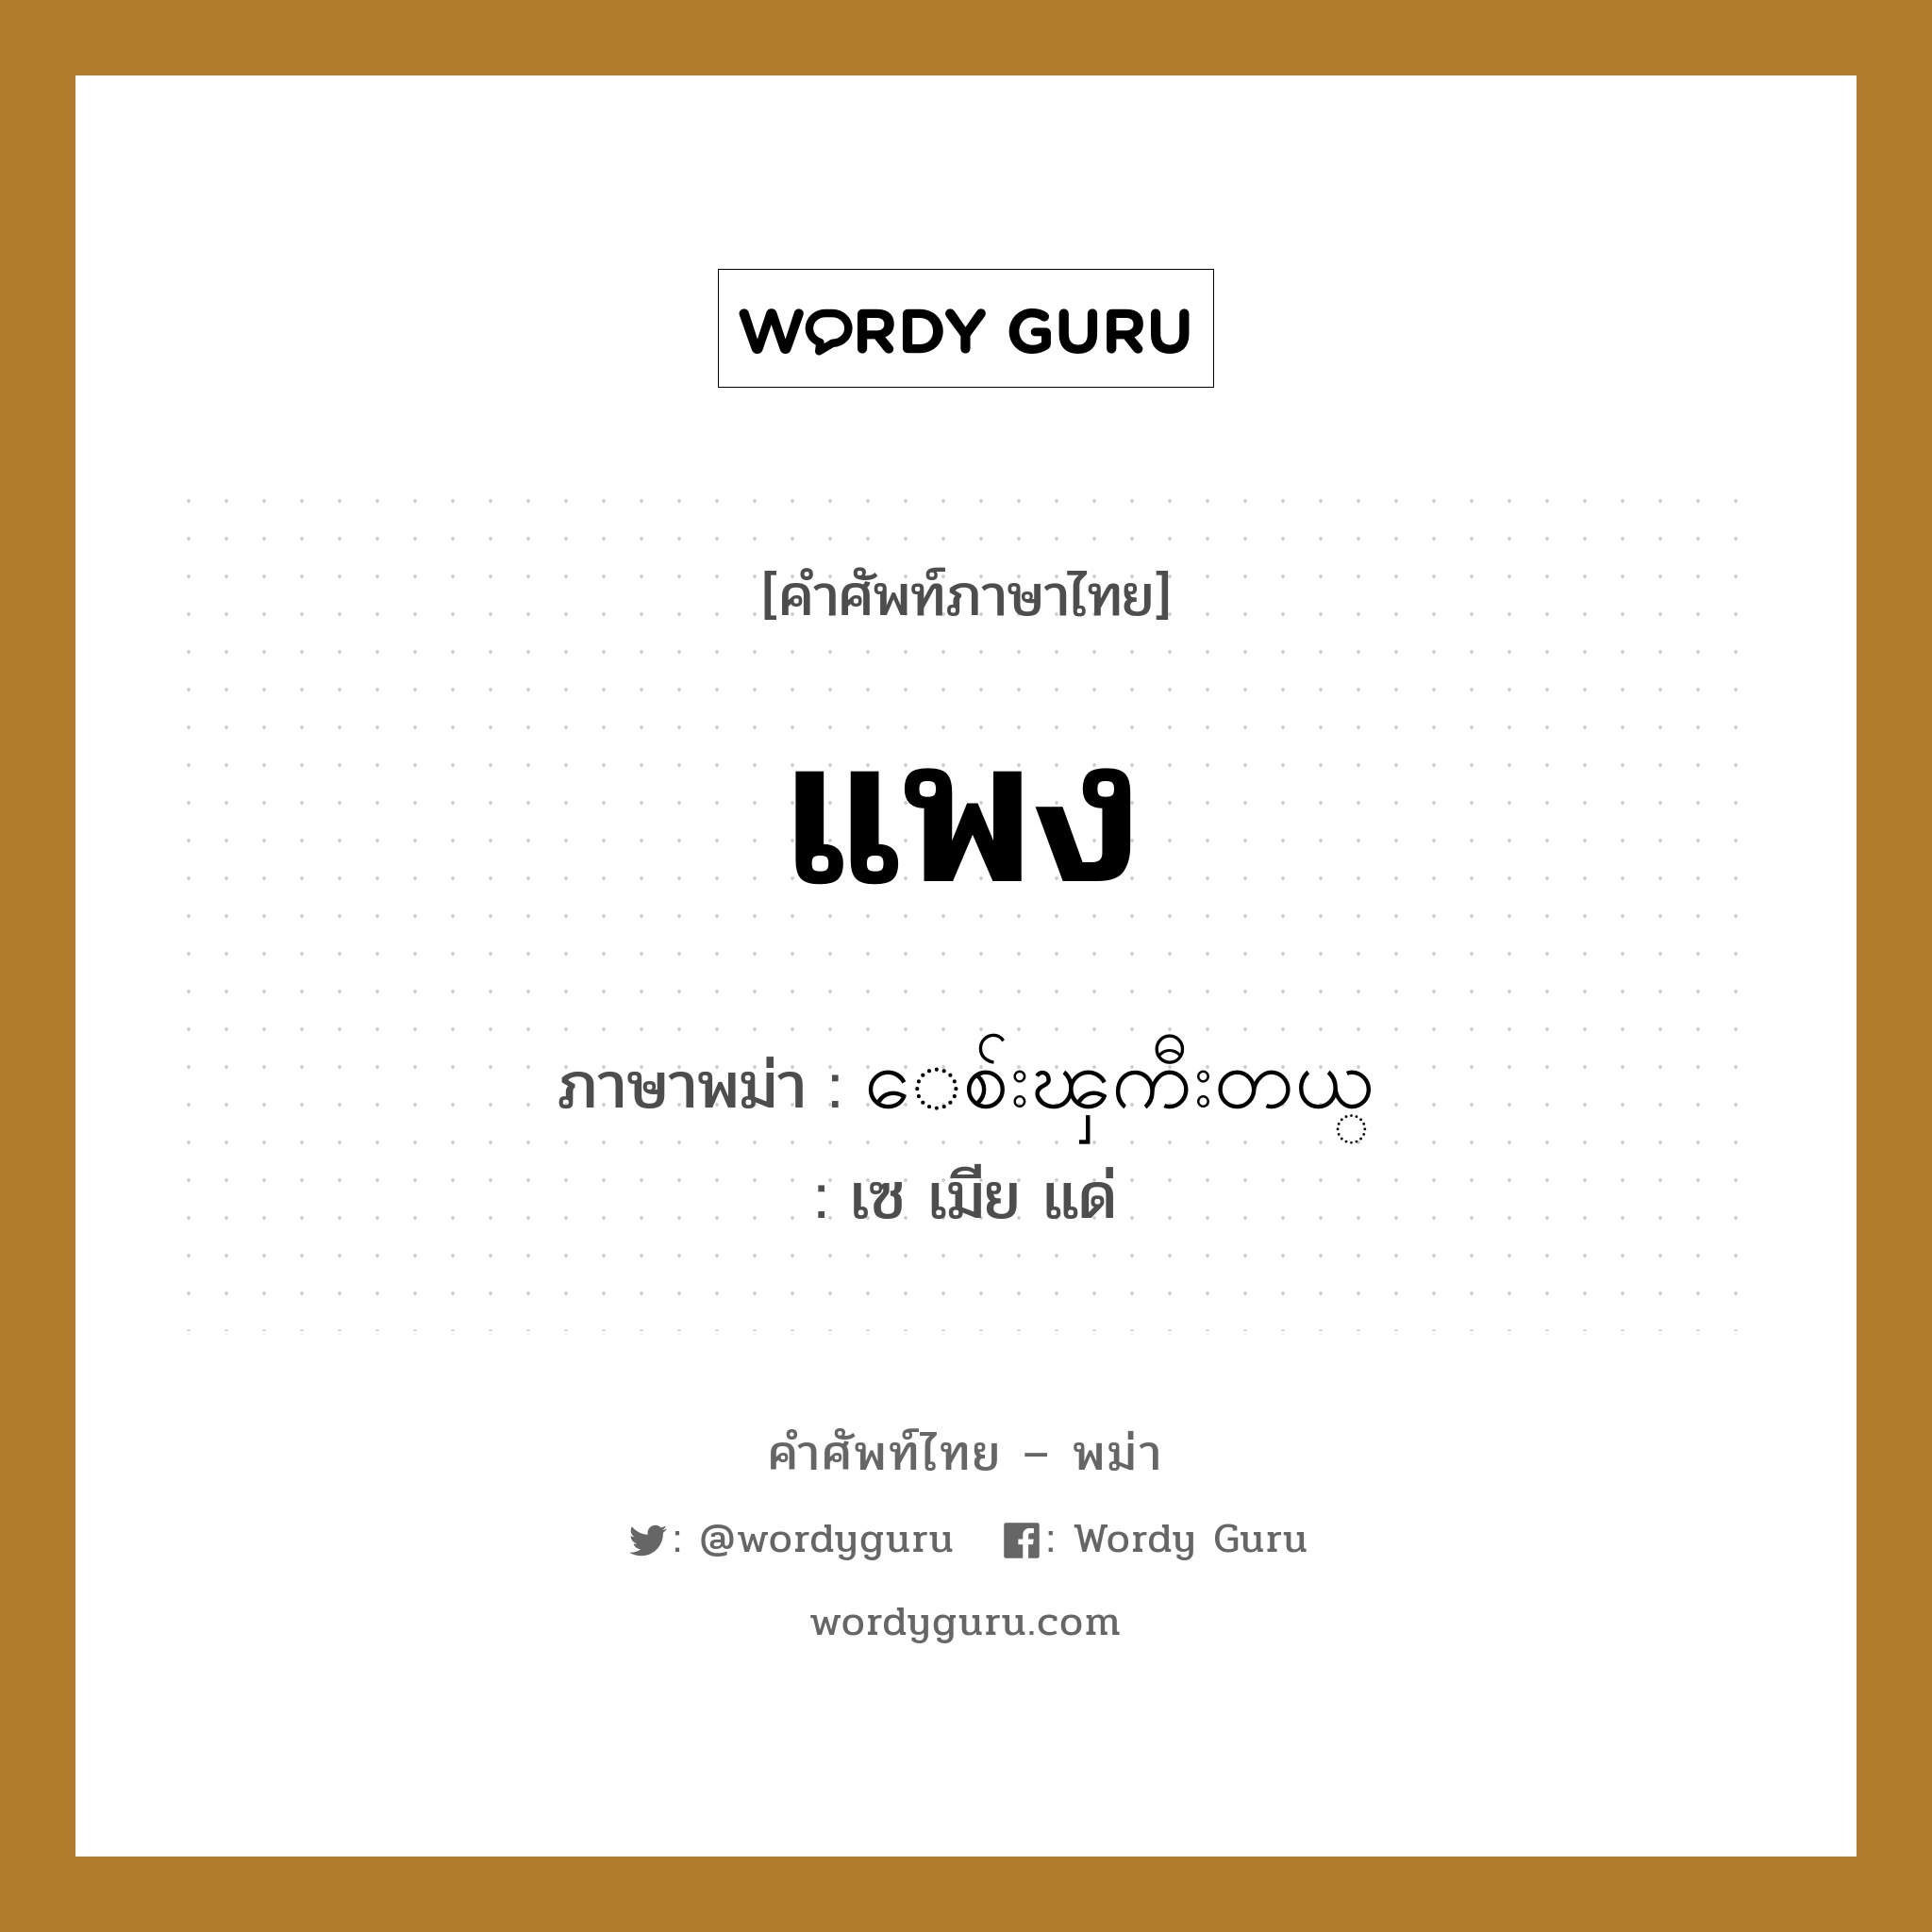 แพง ภาษาพม่าคืออะไร, คำศัพท์ภาษาไทย - พม่า แพง ภาษาพม่า ေစ်းၾကီးတယ္ หมวด บทสนทนาการซื้อขาย เซ เมีย แด่ หมวด บทสนทนาการซื้อขาย